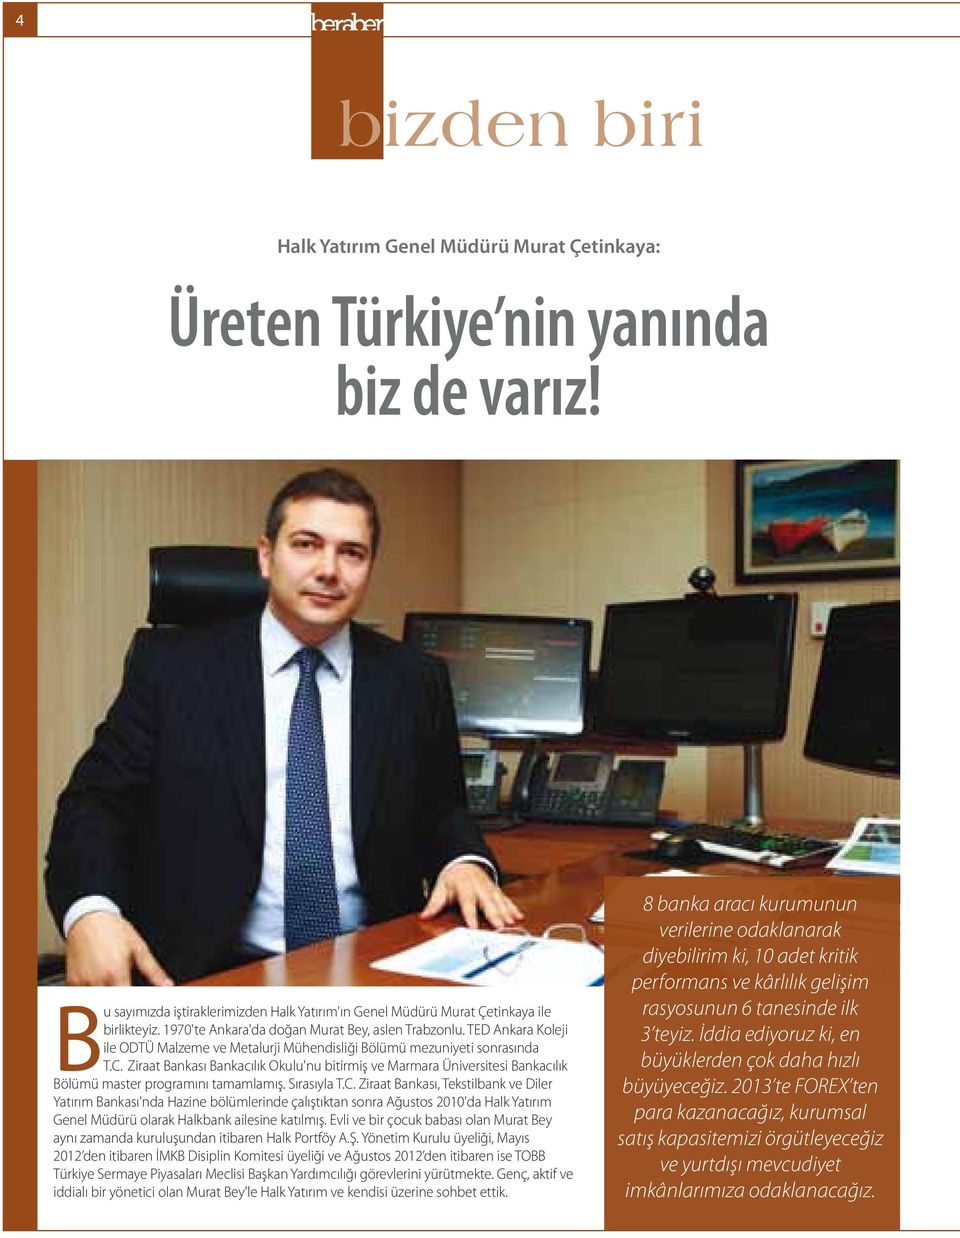 Ziraat Bankası Bankacılık Okulu'nu bitirmiş ve Marmara Üniversitesi Bankacılık Bölümü master programını tamamlamış. Sırasıyla T.C.